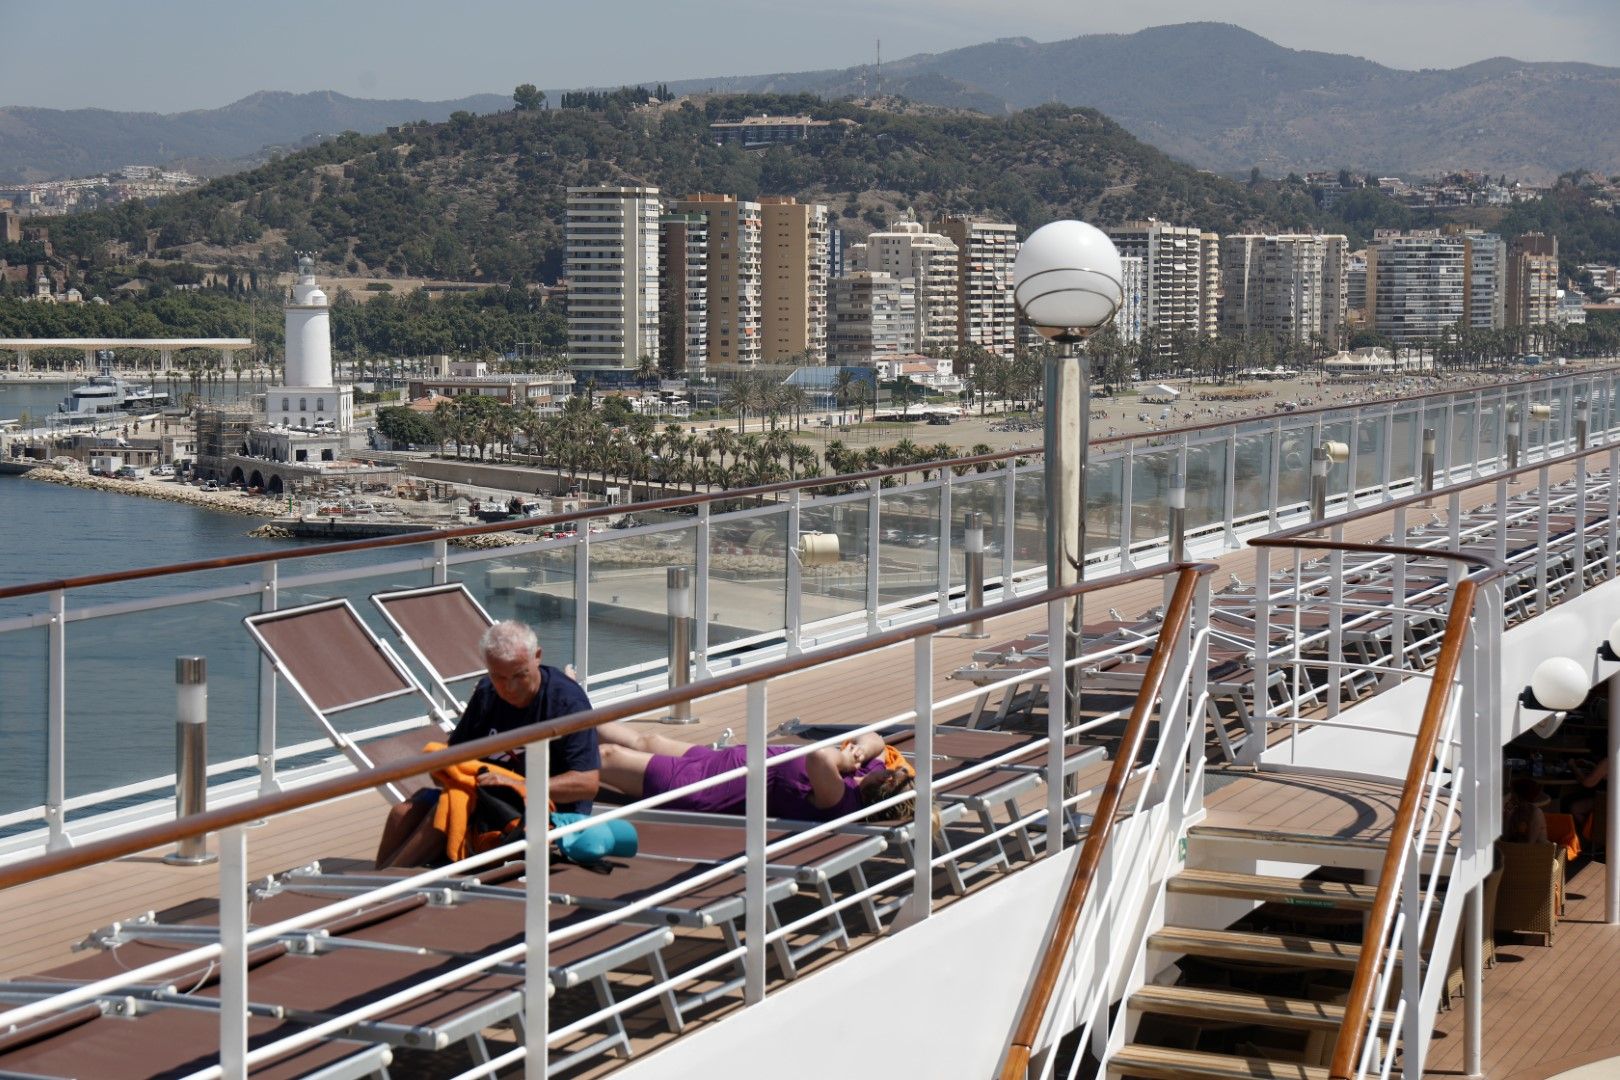 El MSC Orchestra llega al Puerto de Málaga, que será su puerto base este verano